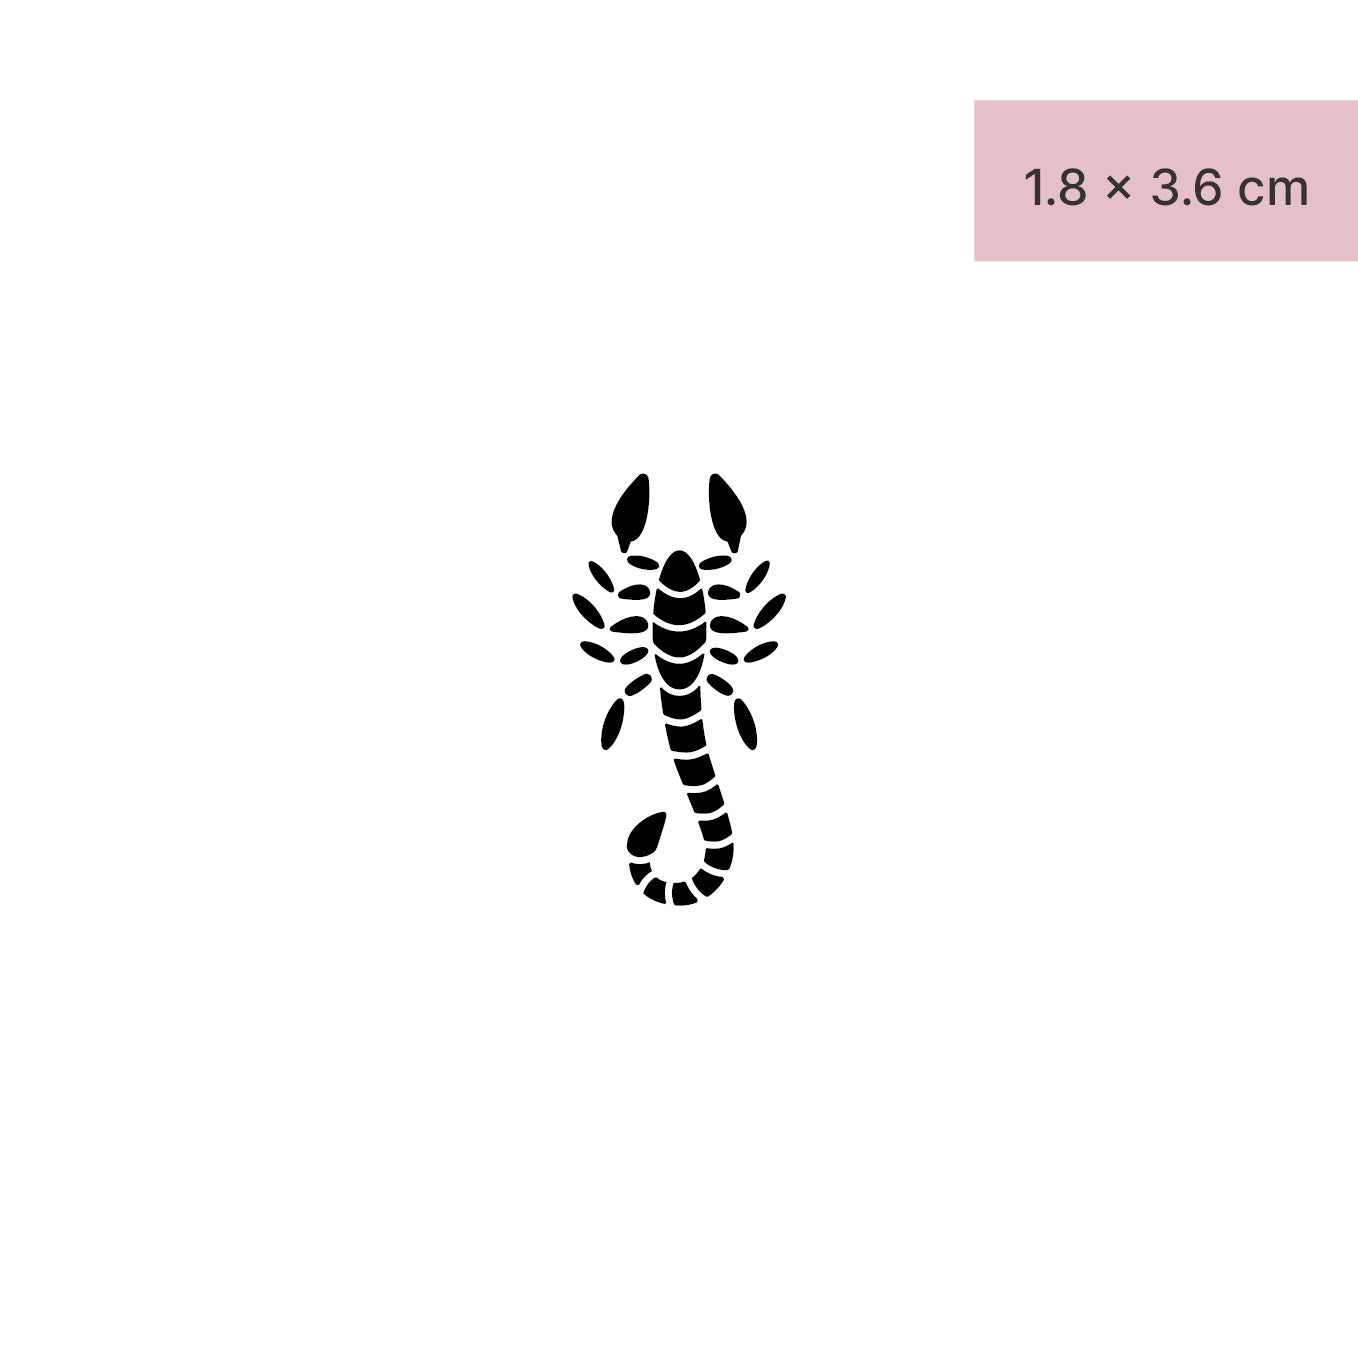 Scorpion Tattoo by takemeaway627 on DeviantArt